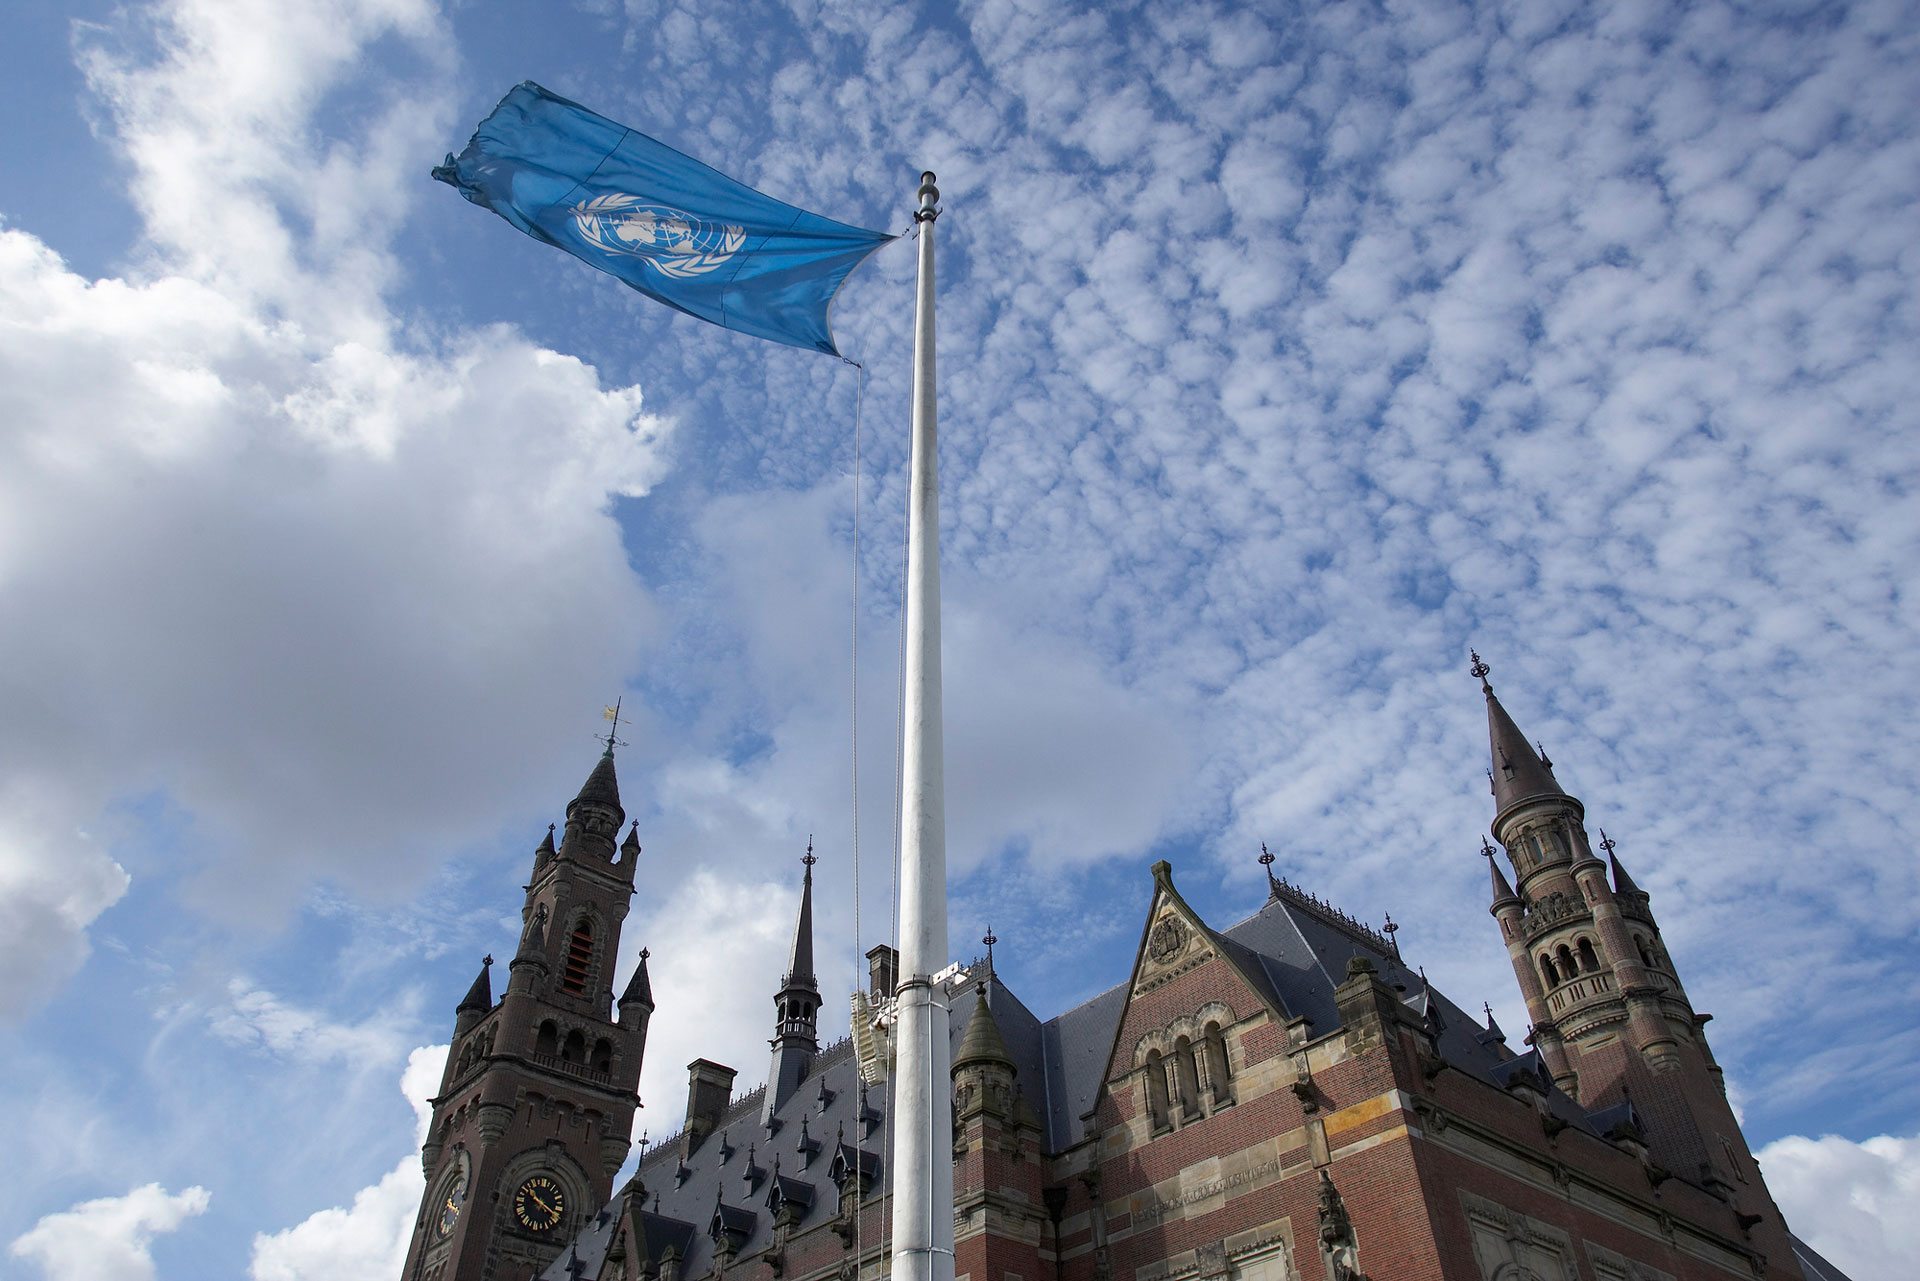 <p><sub>Palača miru, sedež Meddržavnega sodišča (ICJ) v Haagu na Nizozemskem.</sub></p>